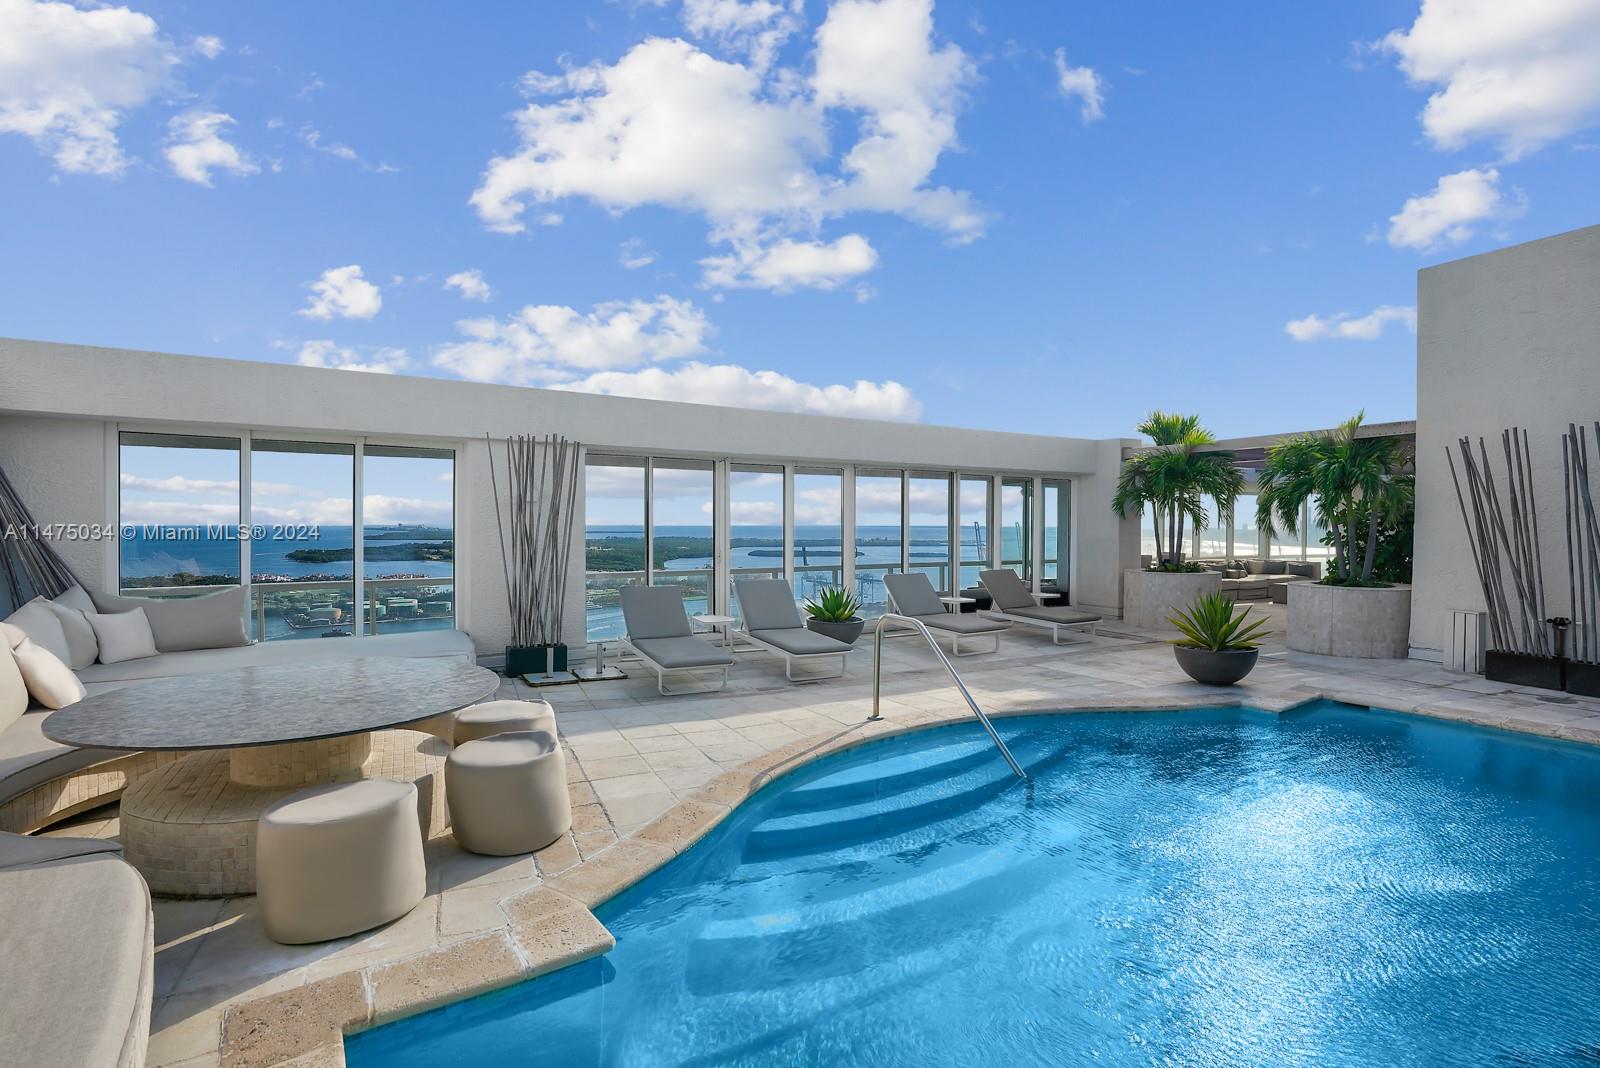 Property for Sale at 450 Alton Rd Rd Ph1, Miami Beach, Miami-Dade County, Florida - Bedrooms: 6 
Bathrooms: 8  - $47,500,000